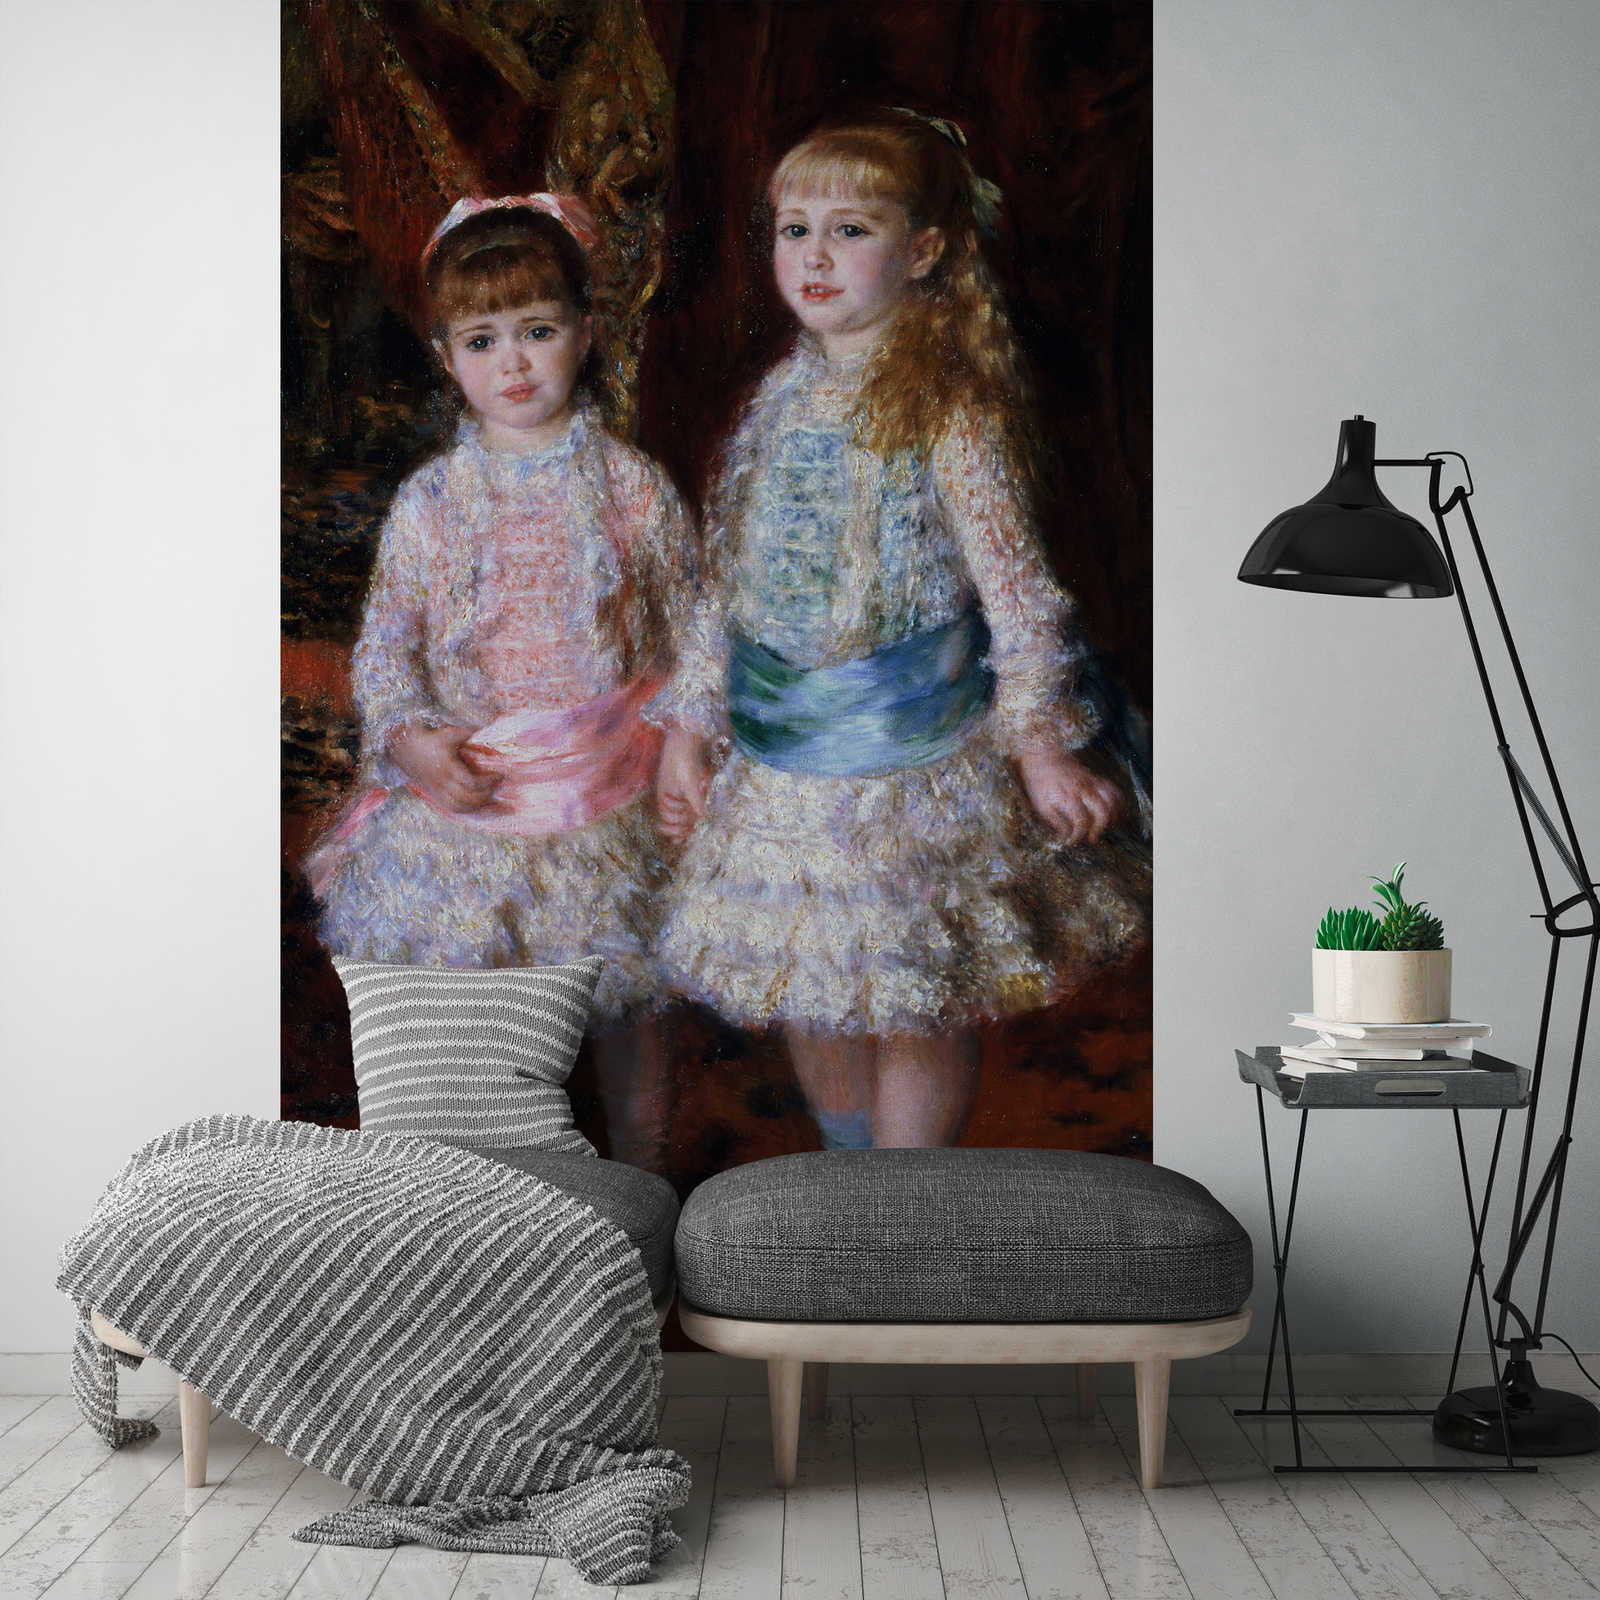             Papier peint "Les filles de Cahen d'Anvers" de Pierre Auguste Renoir
        